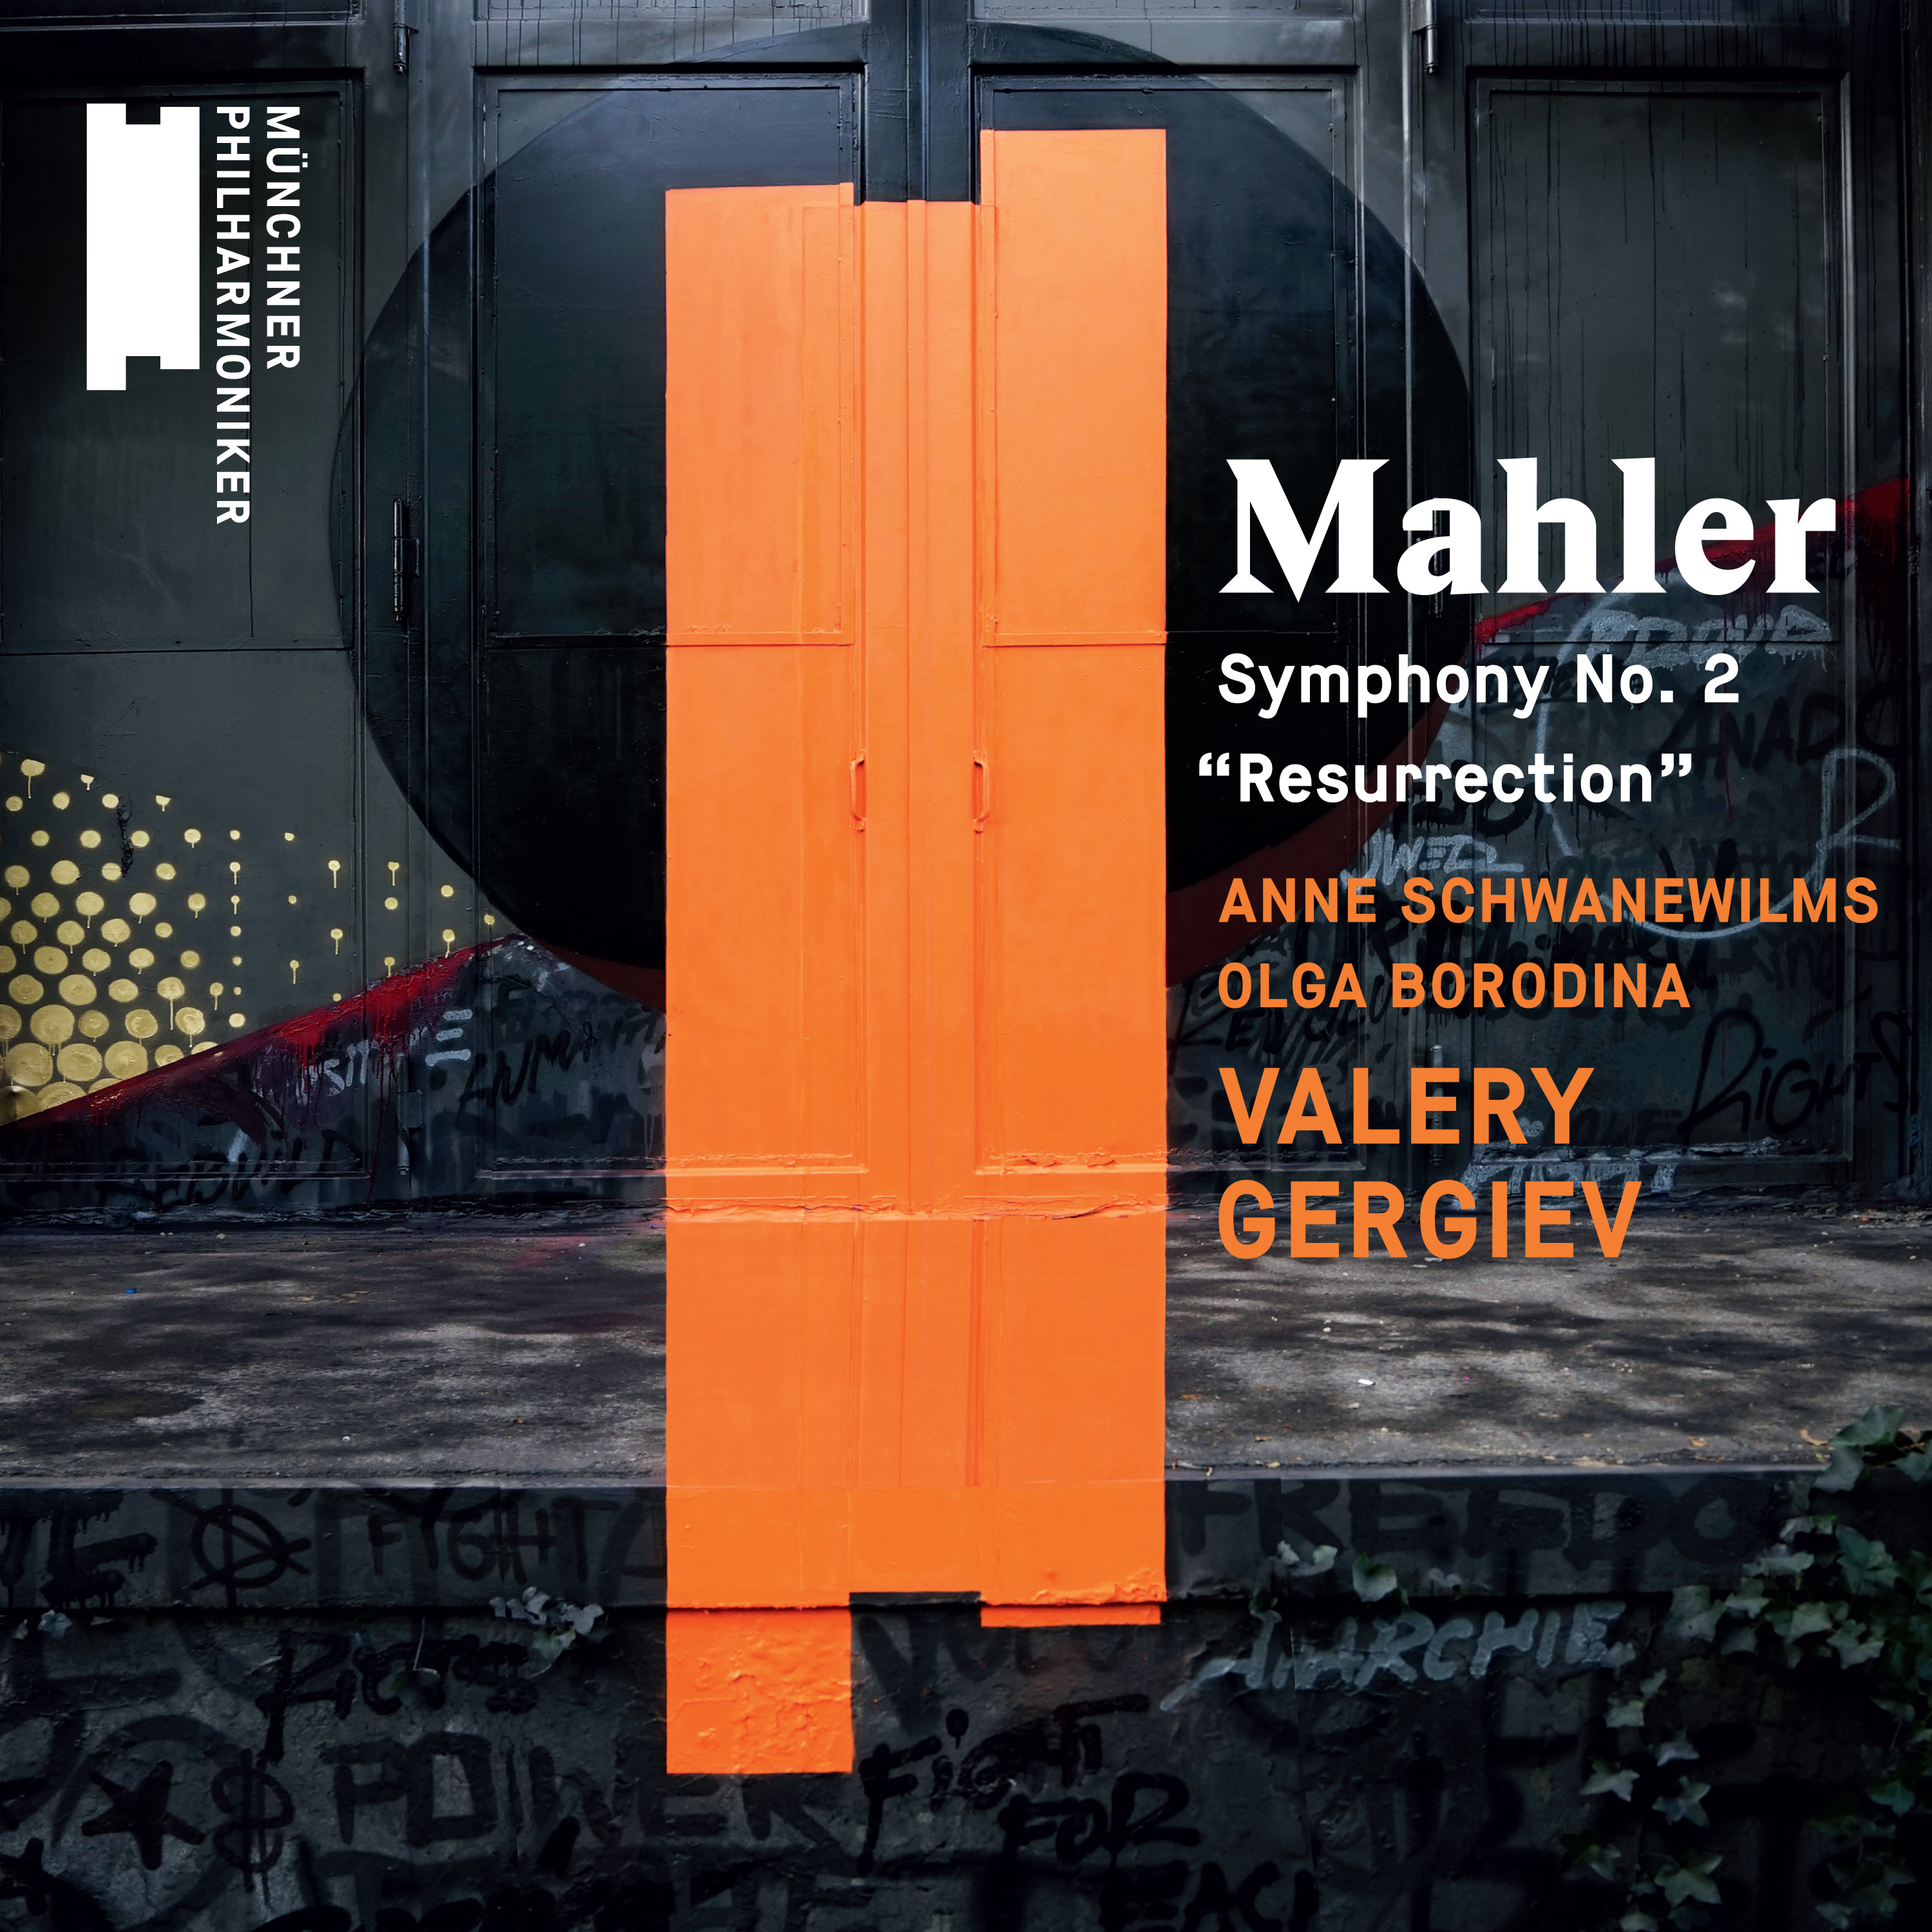 Mahler Symphony No. 2 “Ressurection” Warner Classics